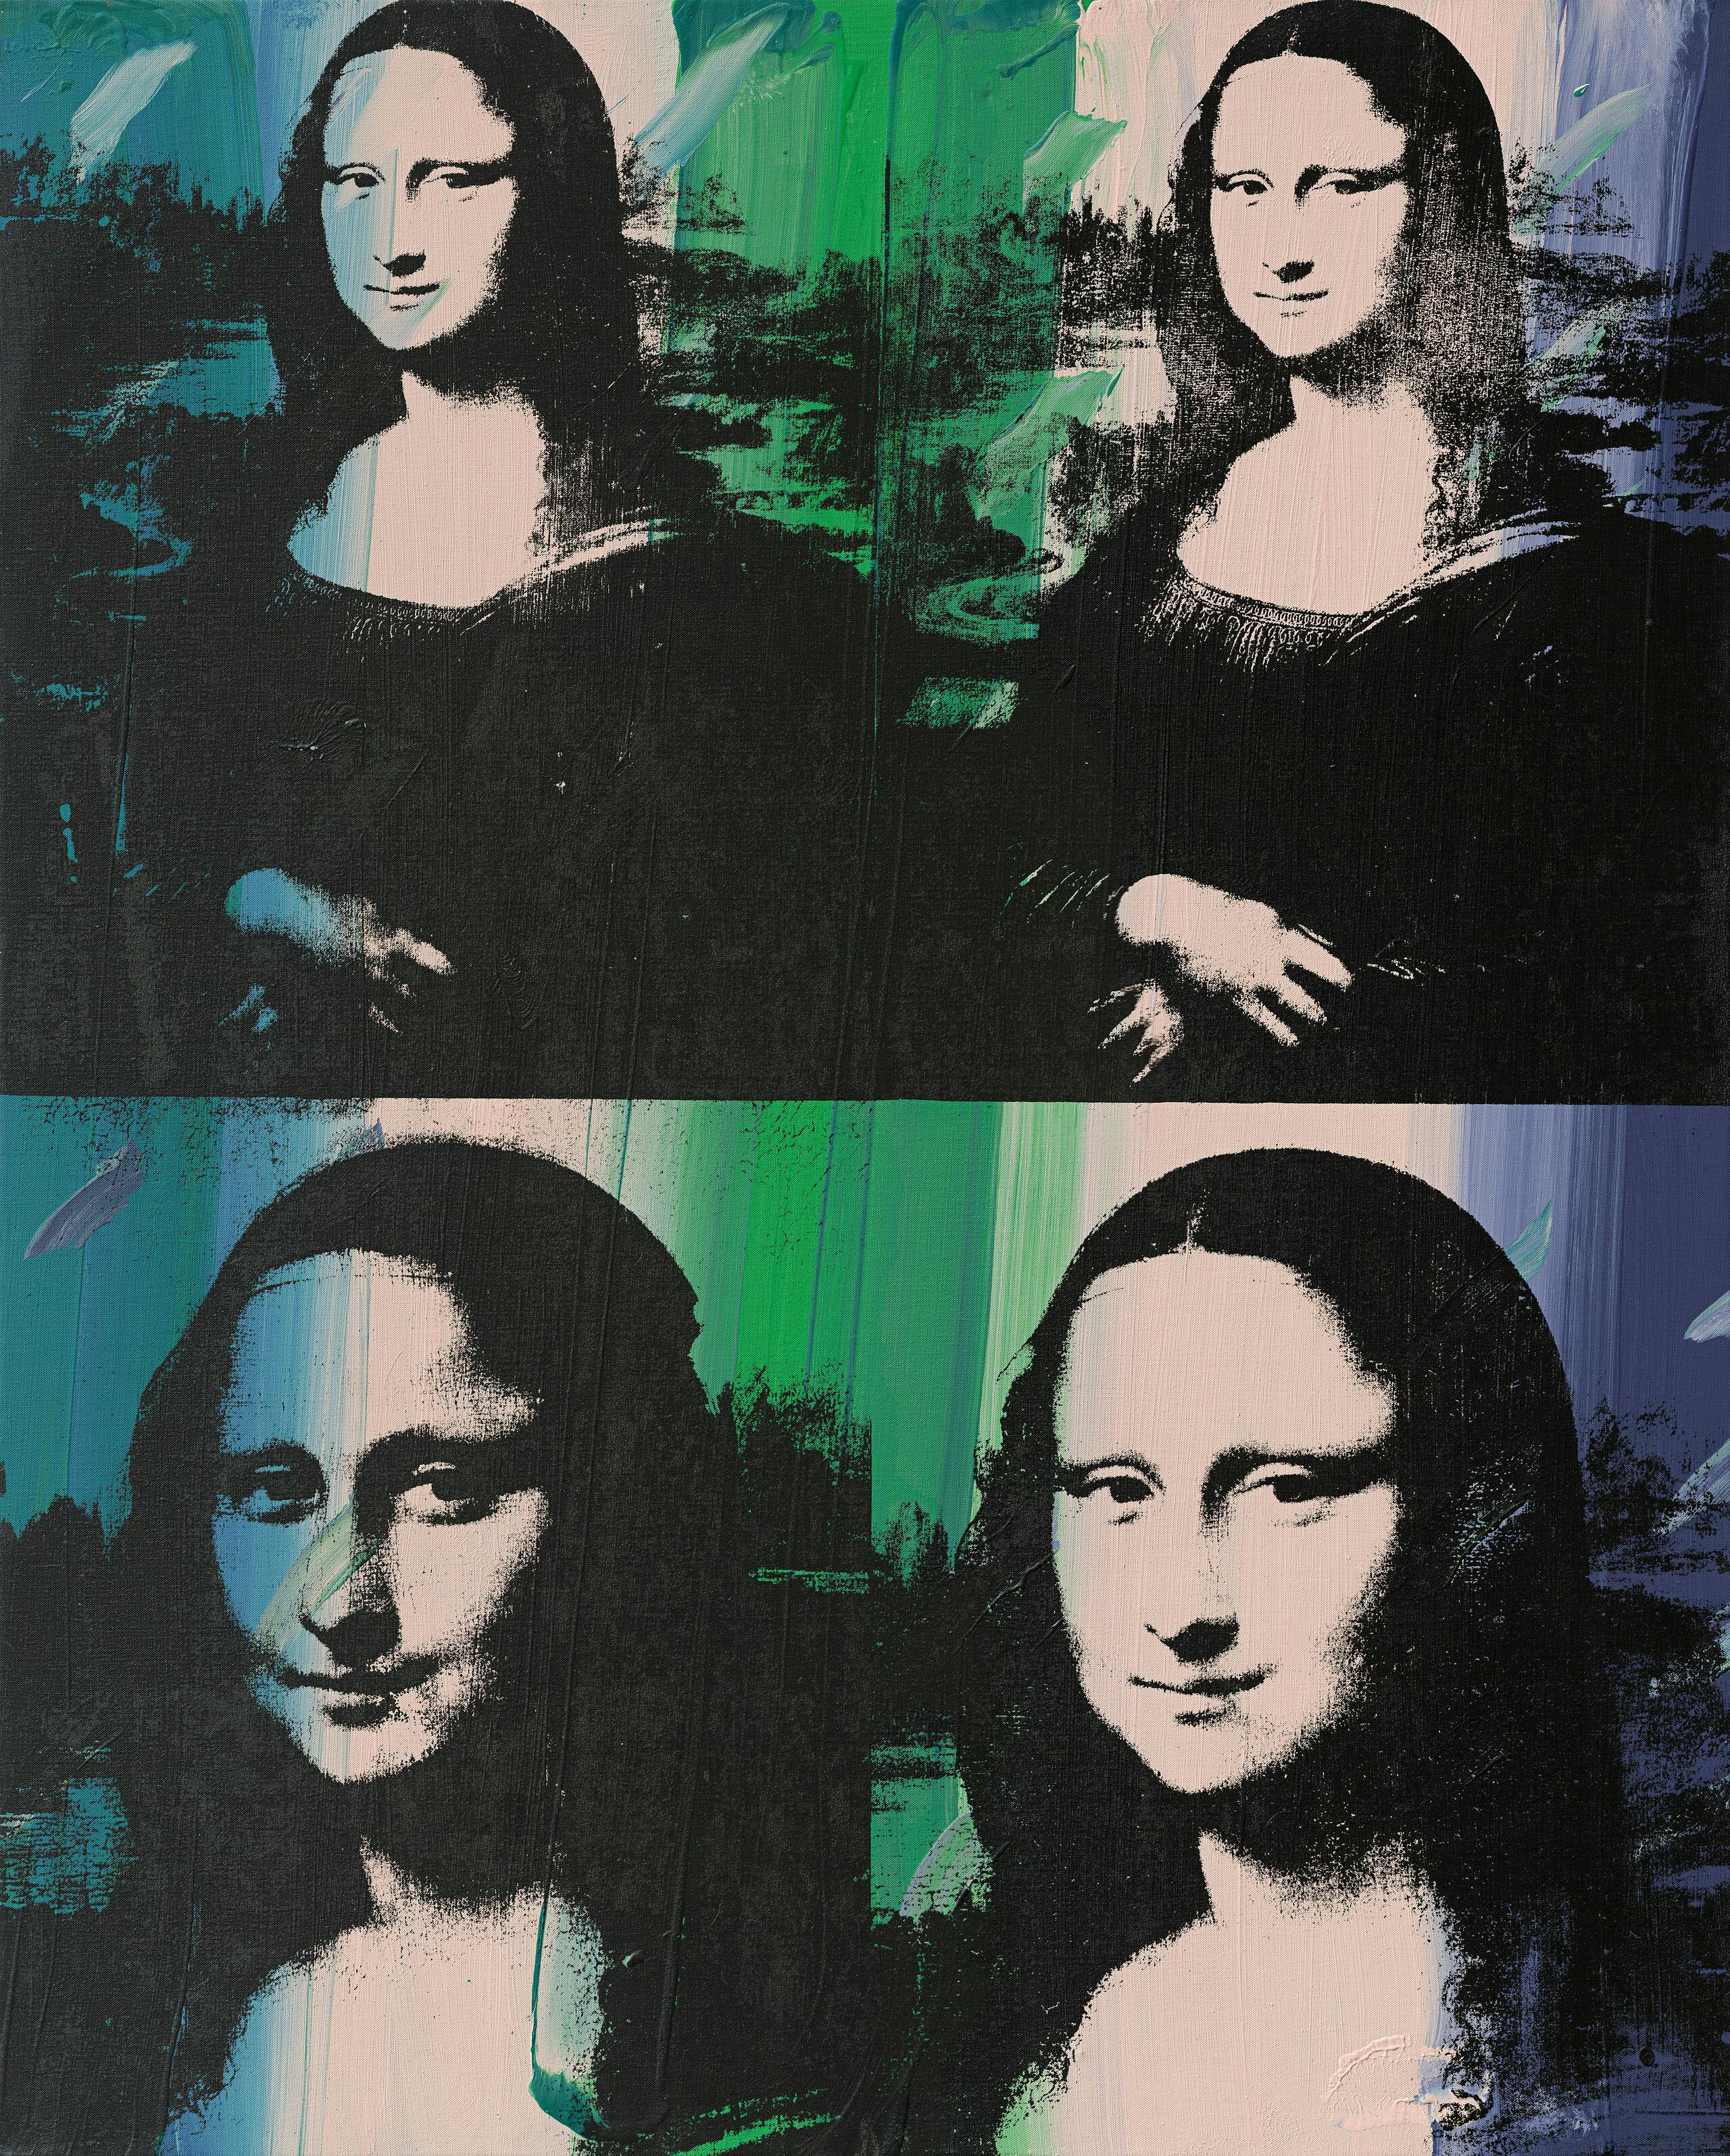 Farbige Druckgrafik: die berühmte Mona Lisa von Leonardo da Vinci ist viermal abgebildet: oben zweimal und darunter zweimal. Großflächig darübergelegte Farbbahnen in Blau- und Grüntönen verfremden das Gemälde.